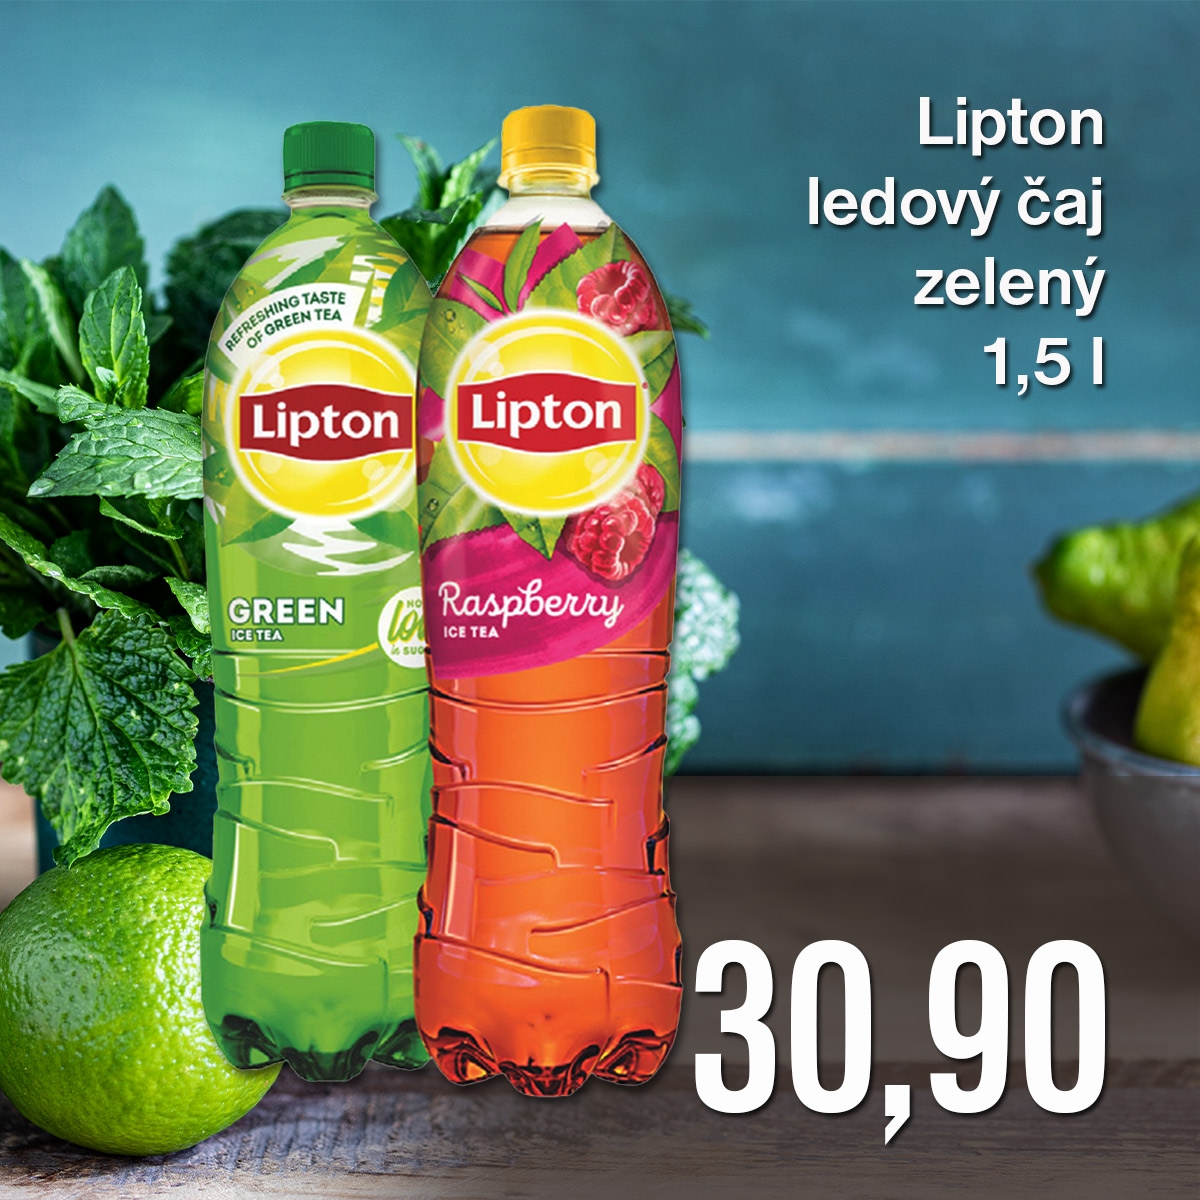 Lipton ledový čaj zelený 1,5 l